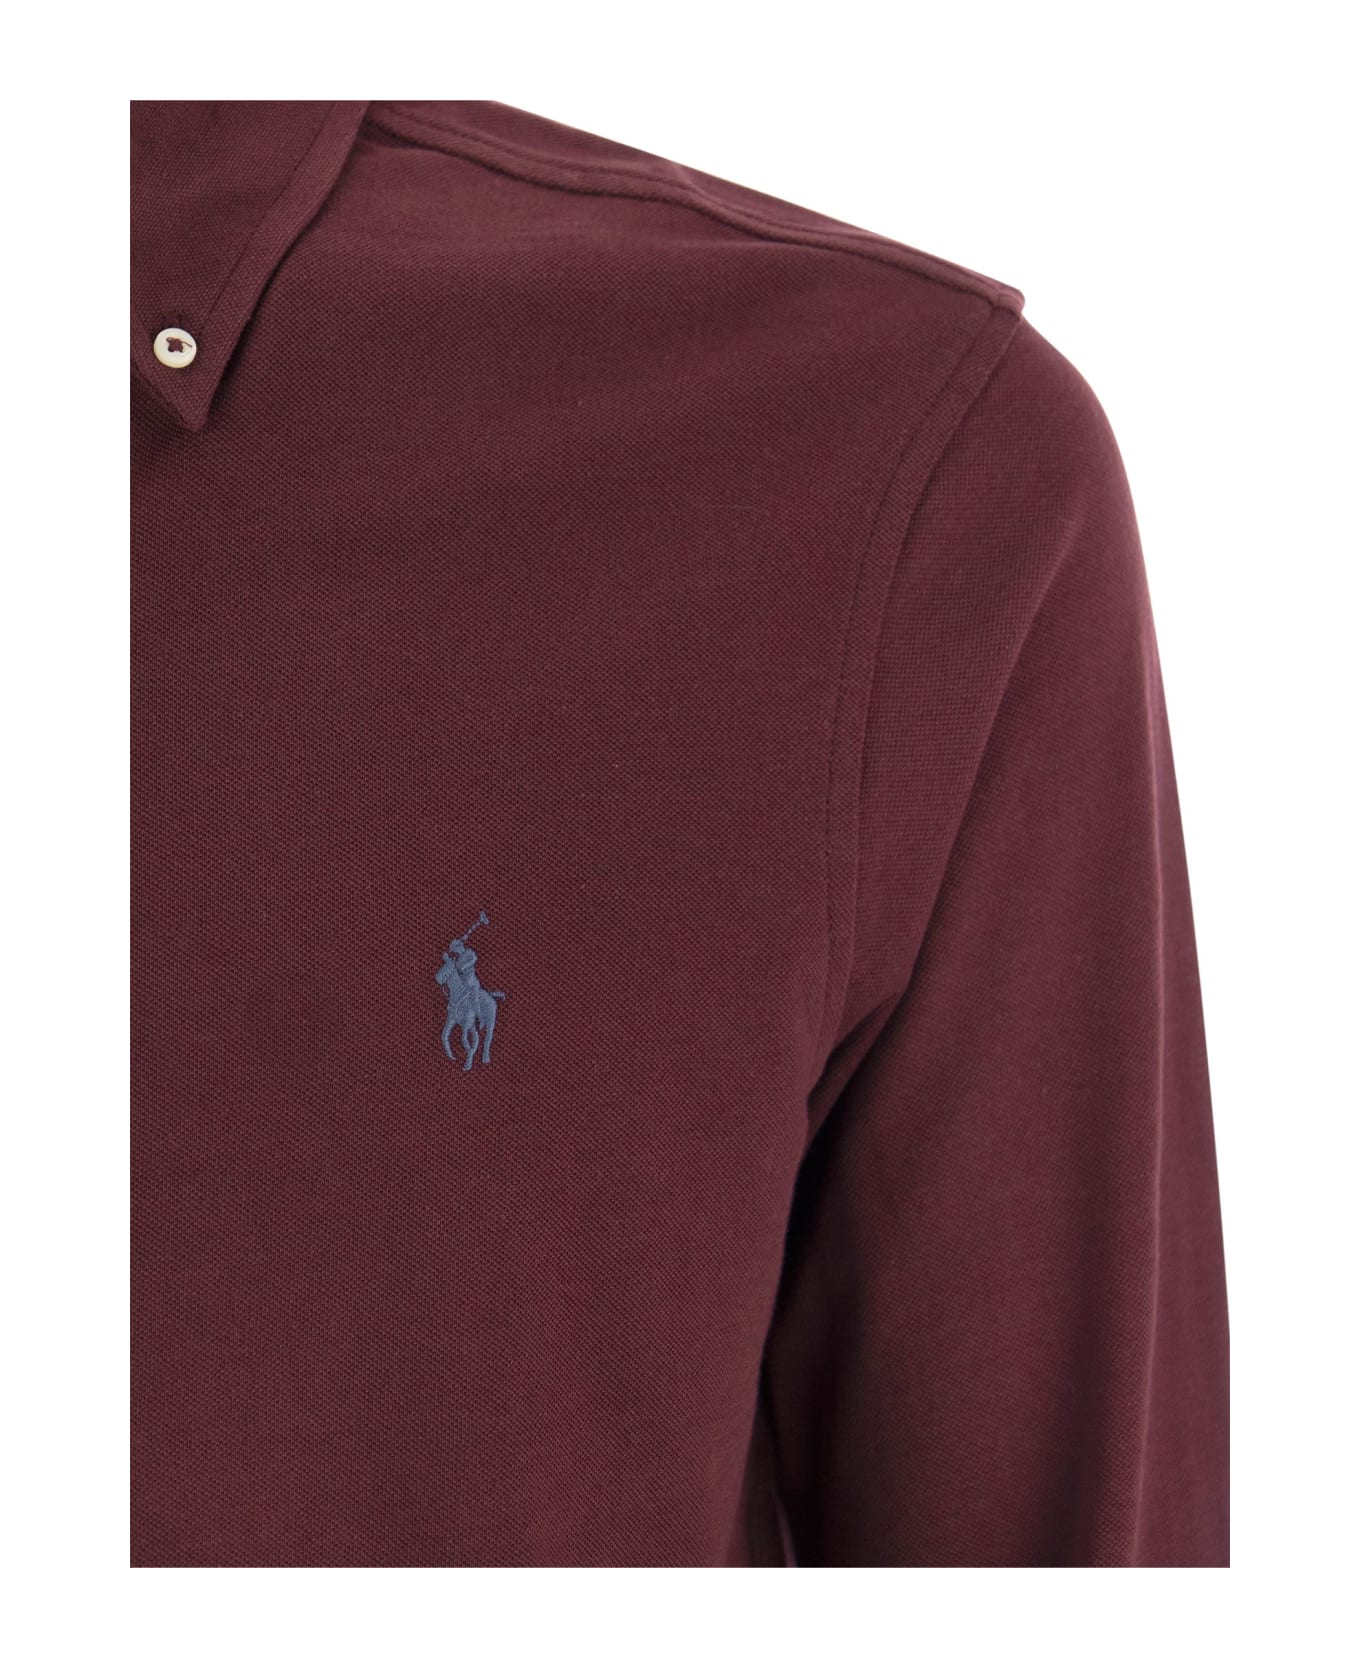 Polo Ralph Lauren Ultralight Pique Shirt - Bordeaux